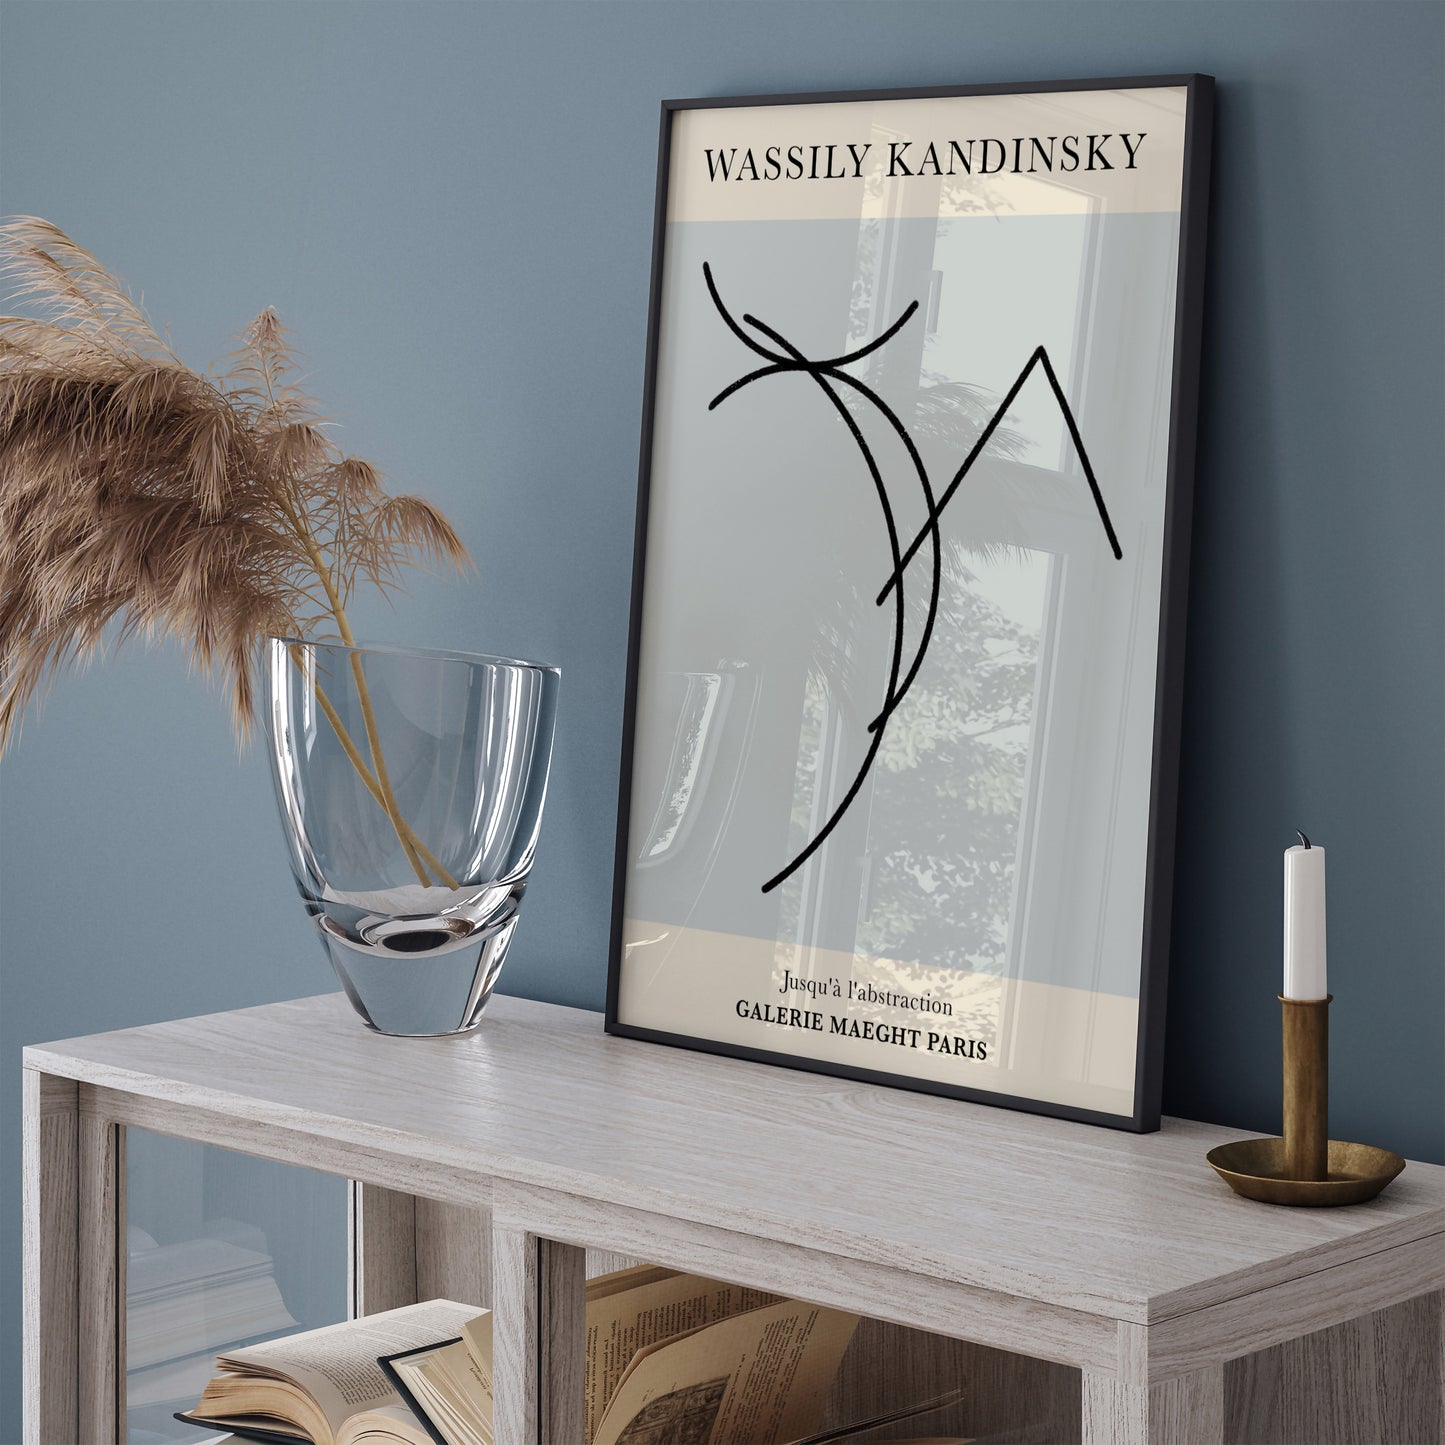 Wassily Kandinsky Dancer Line Art Poster